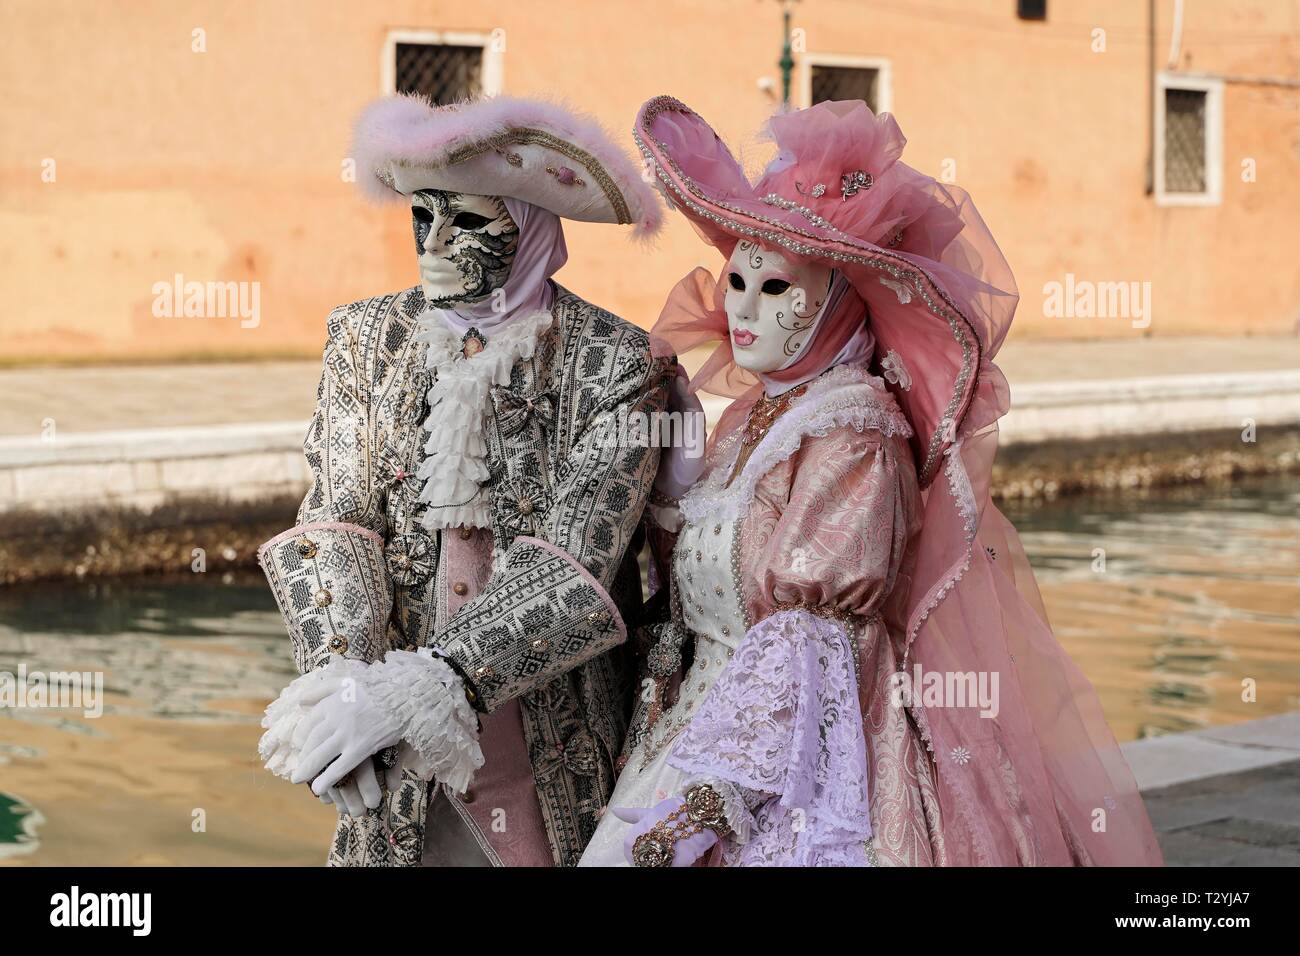 Coppia con le tradizionali maschere veneziane, il Carnevale di